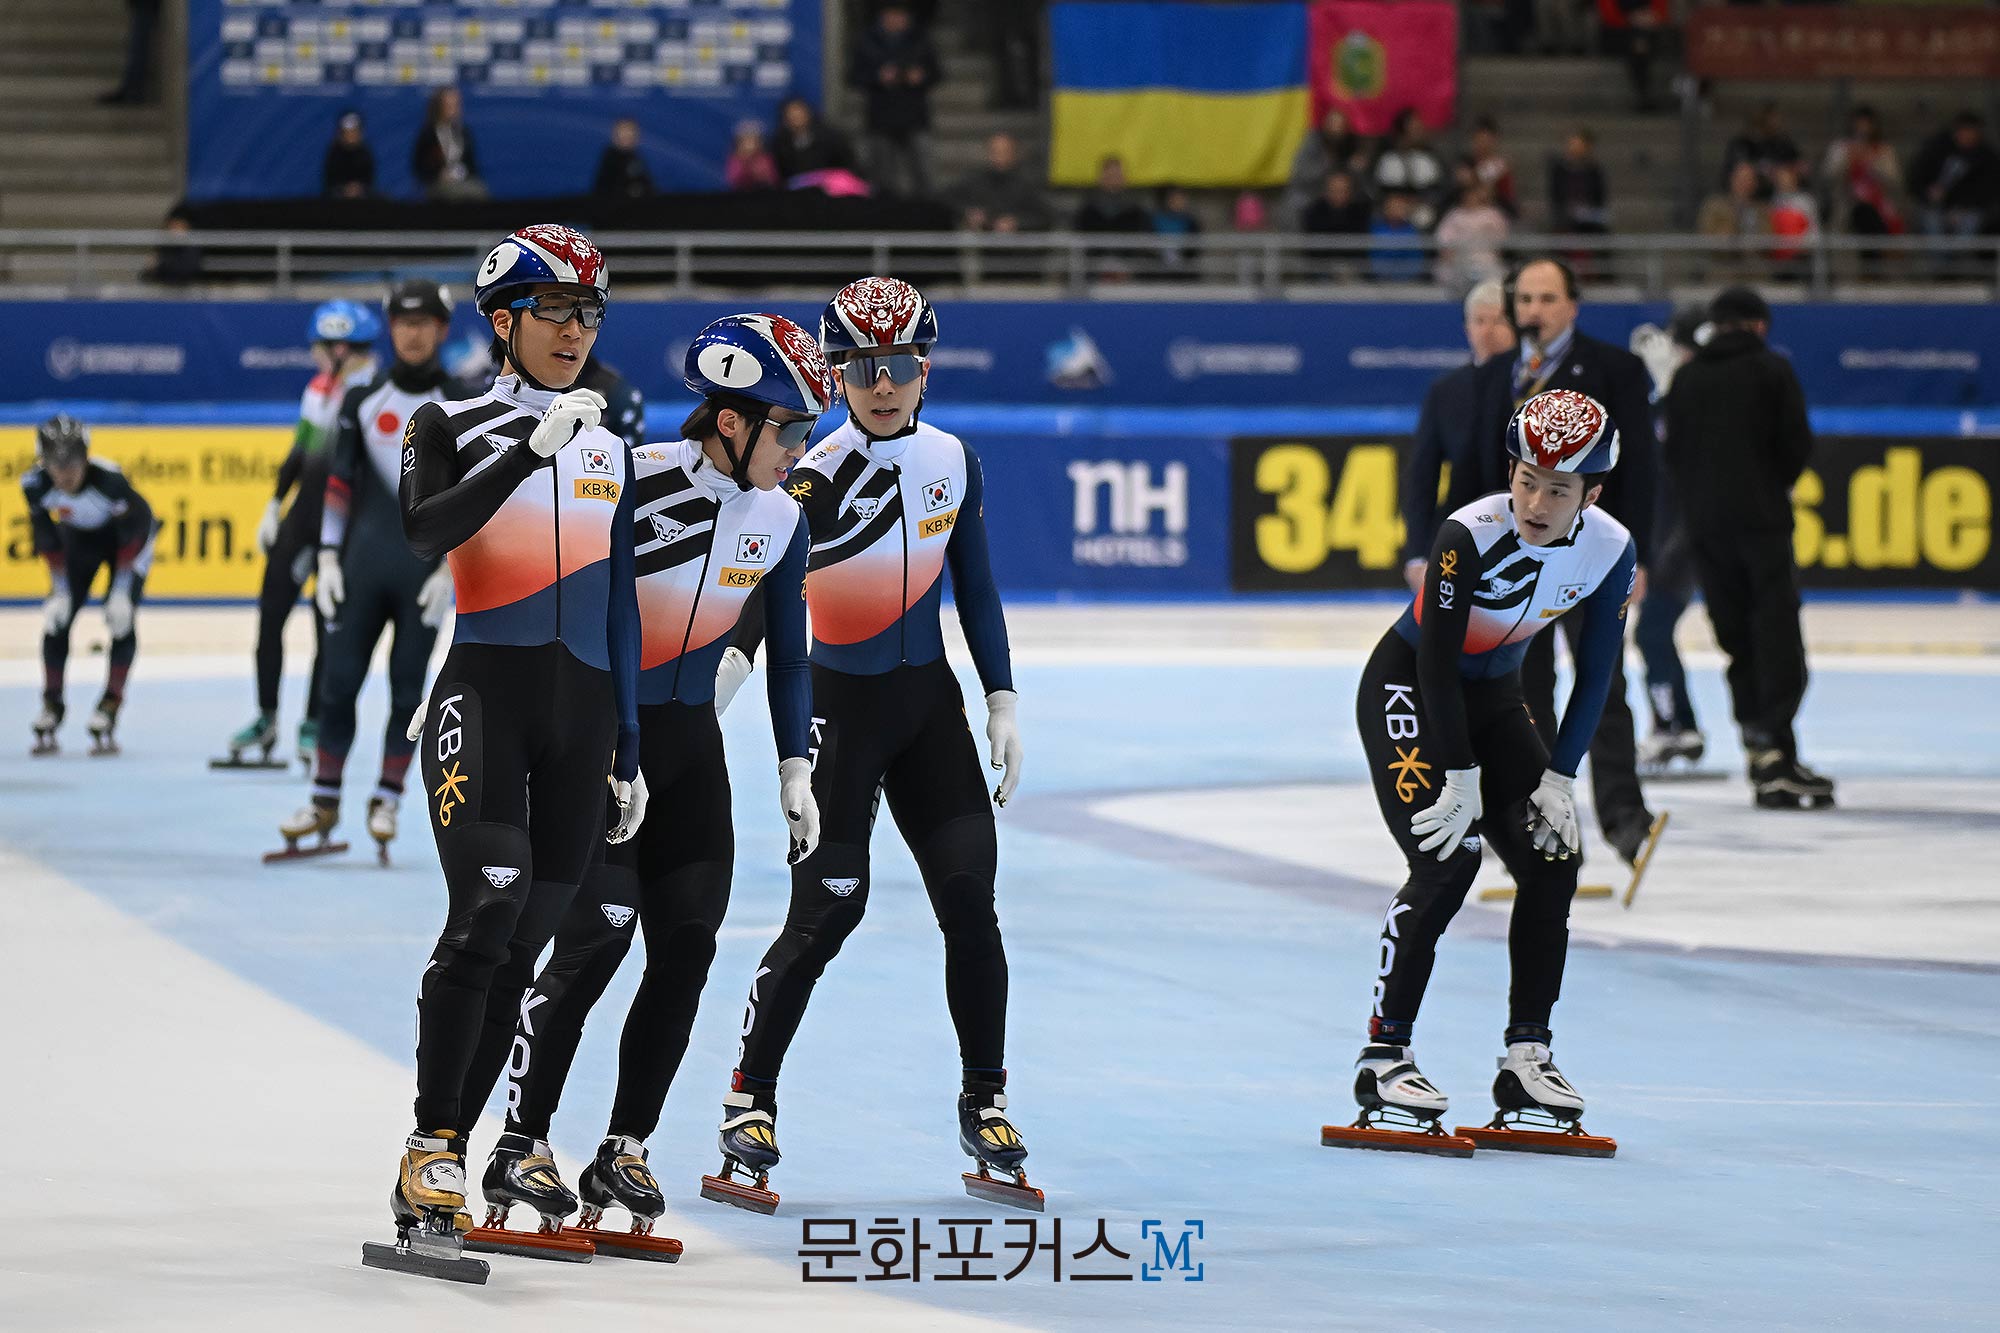 쇼트트랙 월드컵 5차 대회 남자계주 5,000m 출전한 한국 선수들 | 사진 = Christian Kaspar-Bartke (c) ISU